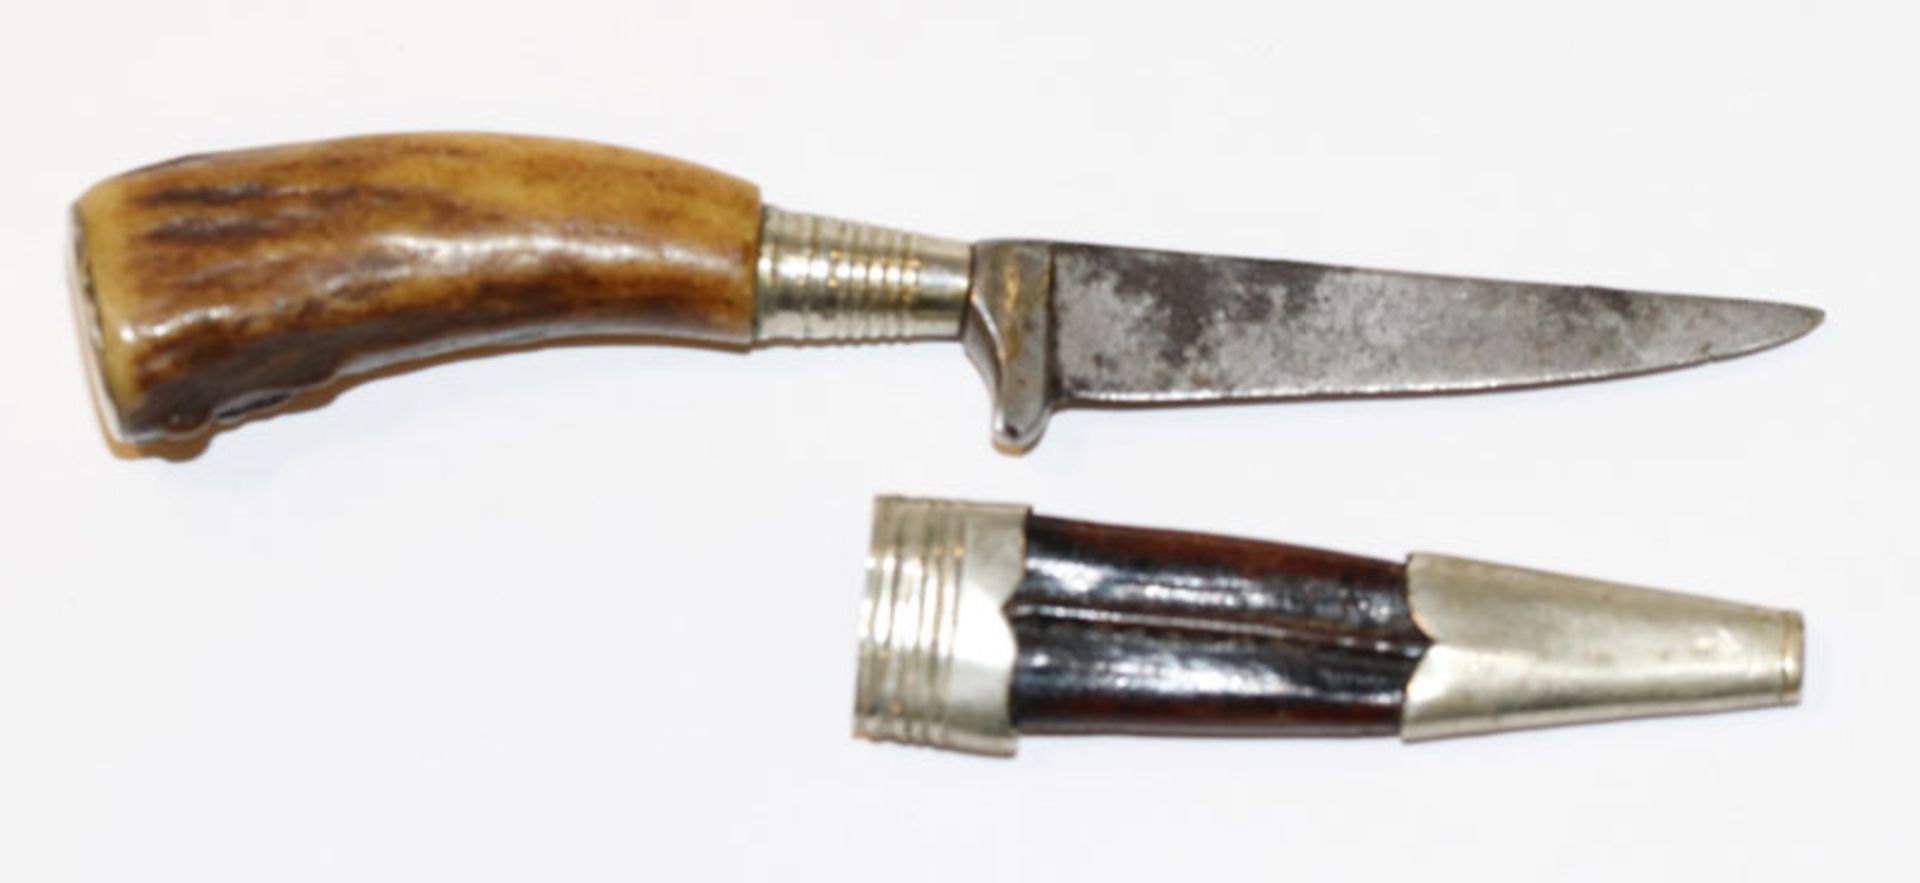 Kleines Messer mit Hirschhorngriff und Leder/Metall Scheide, L 10 cm